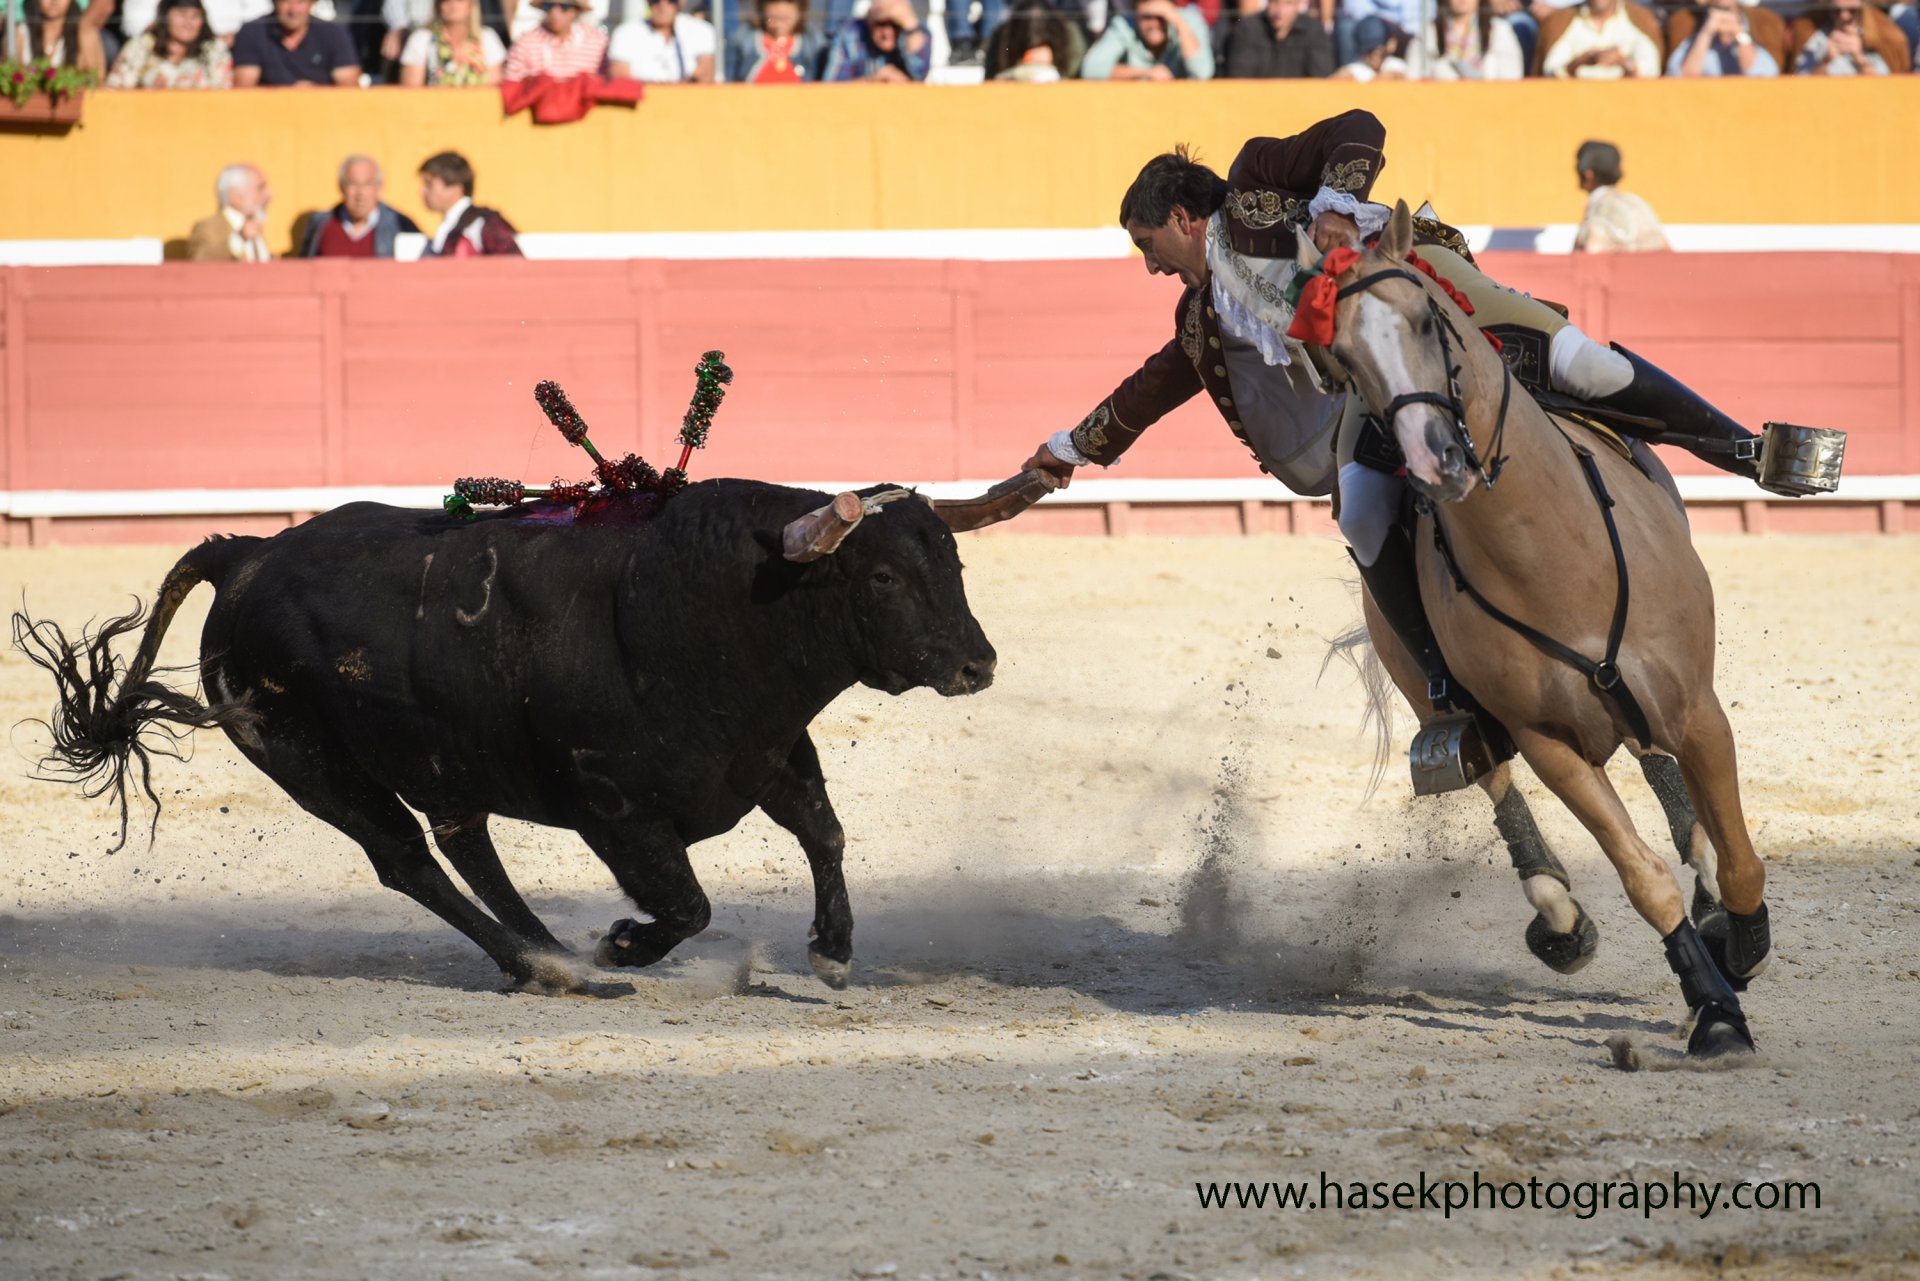 Koně z bullfightingových linií jsou prověření býkem v aréně